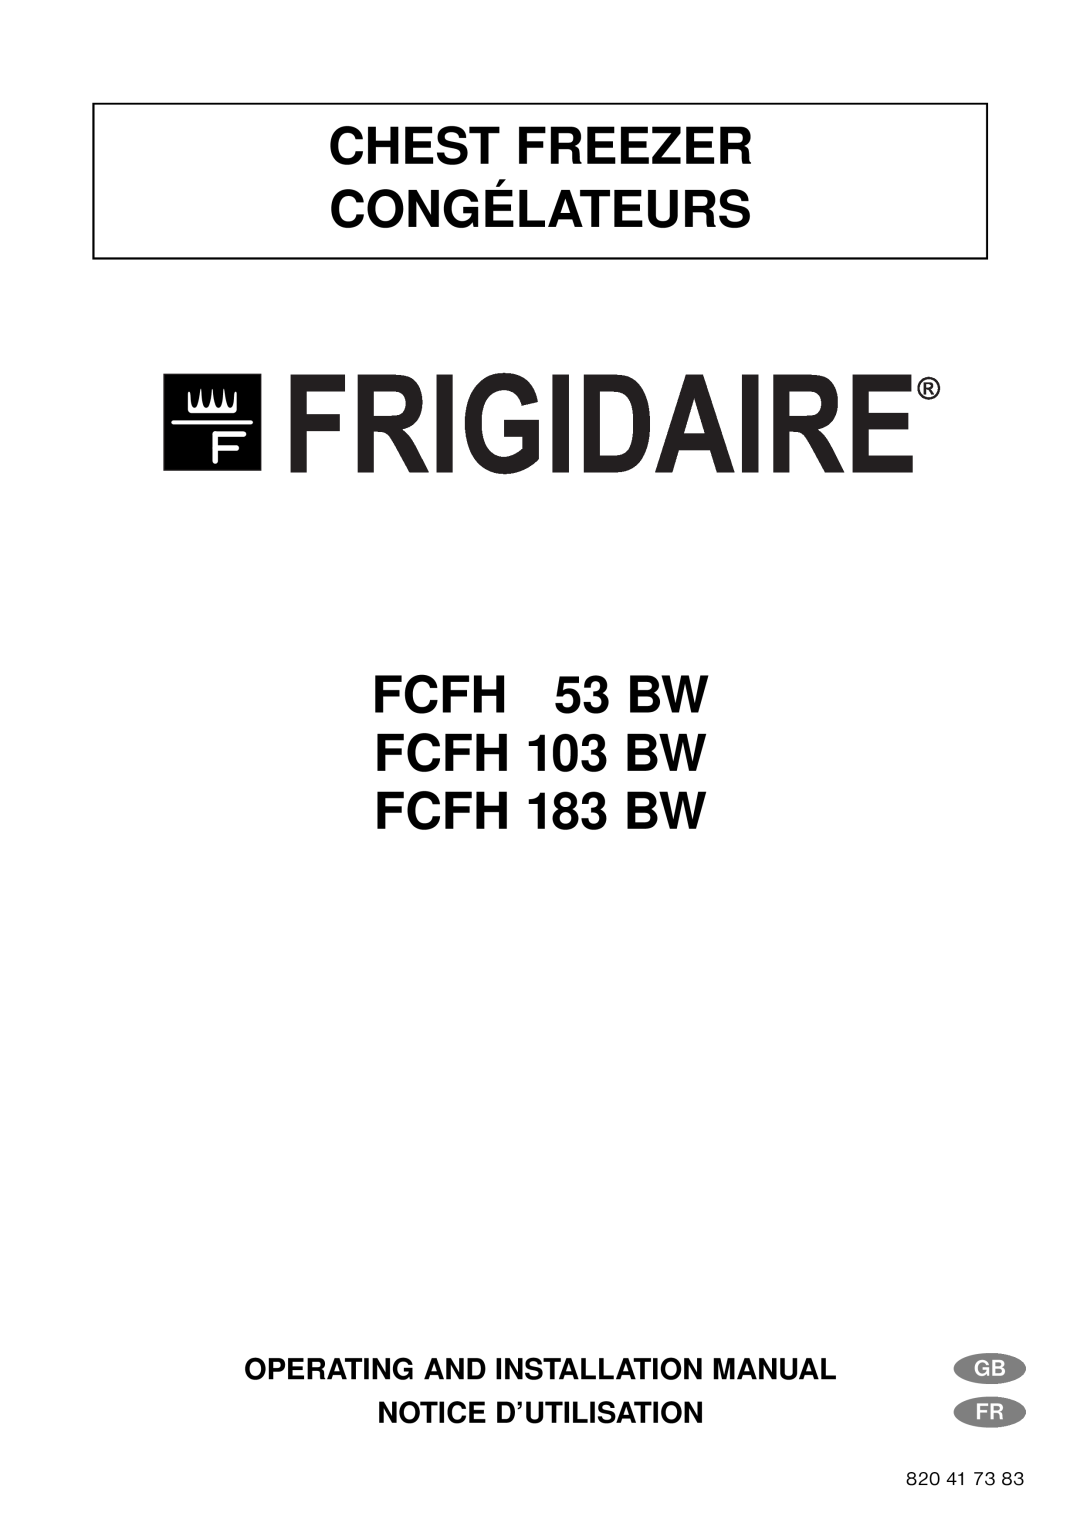 Frigidaire FCFH 183 BW installation manual Operating And Installation Manual Notice D’Utilisation, Gb Fr, 820 41 